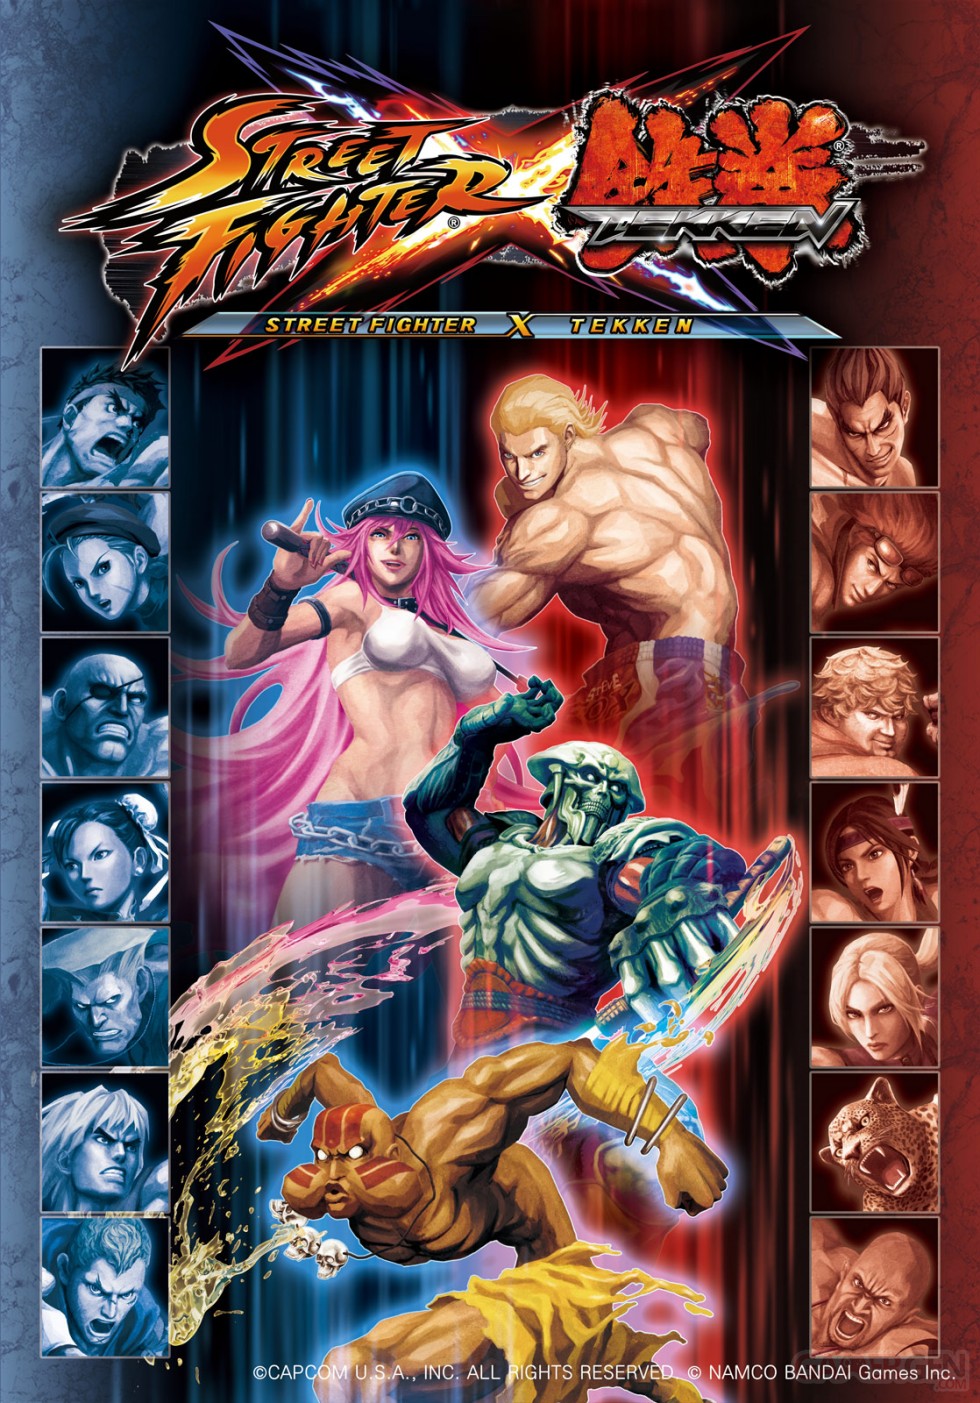 Street-Fighter-x-Tekken-Image-Poster-SDCC-11